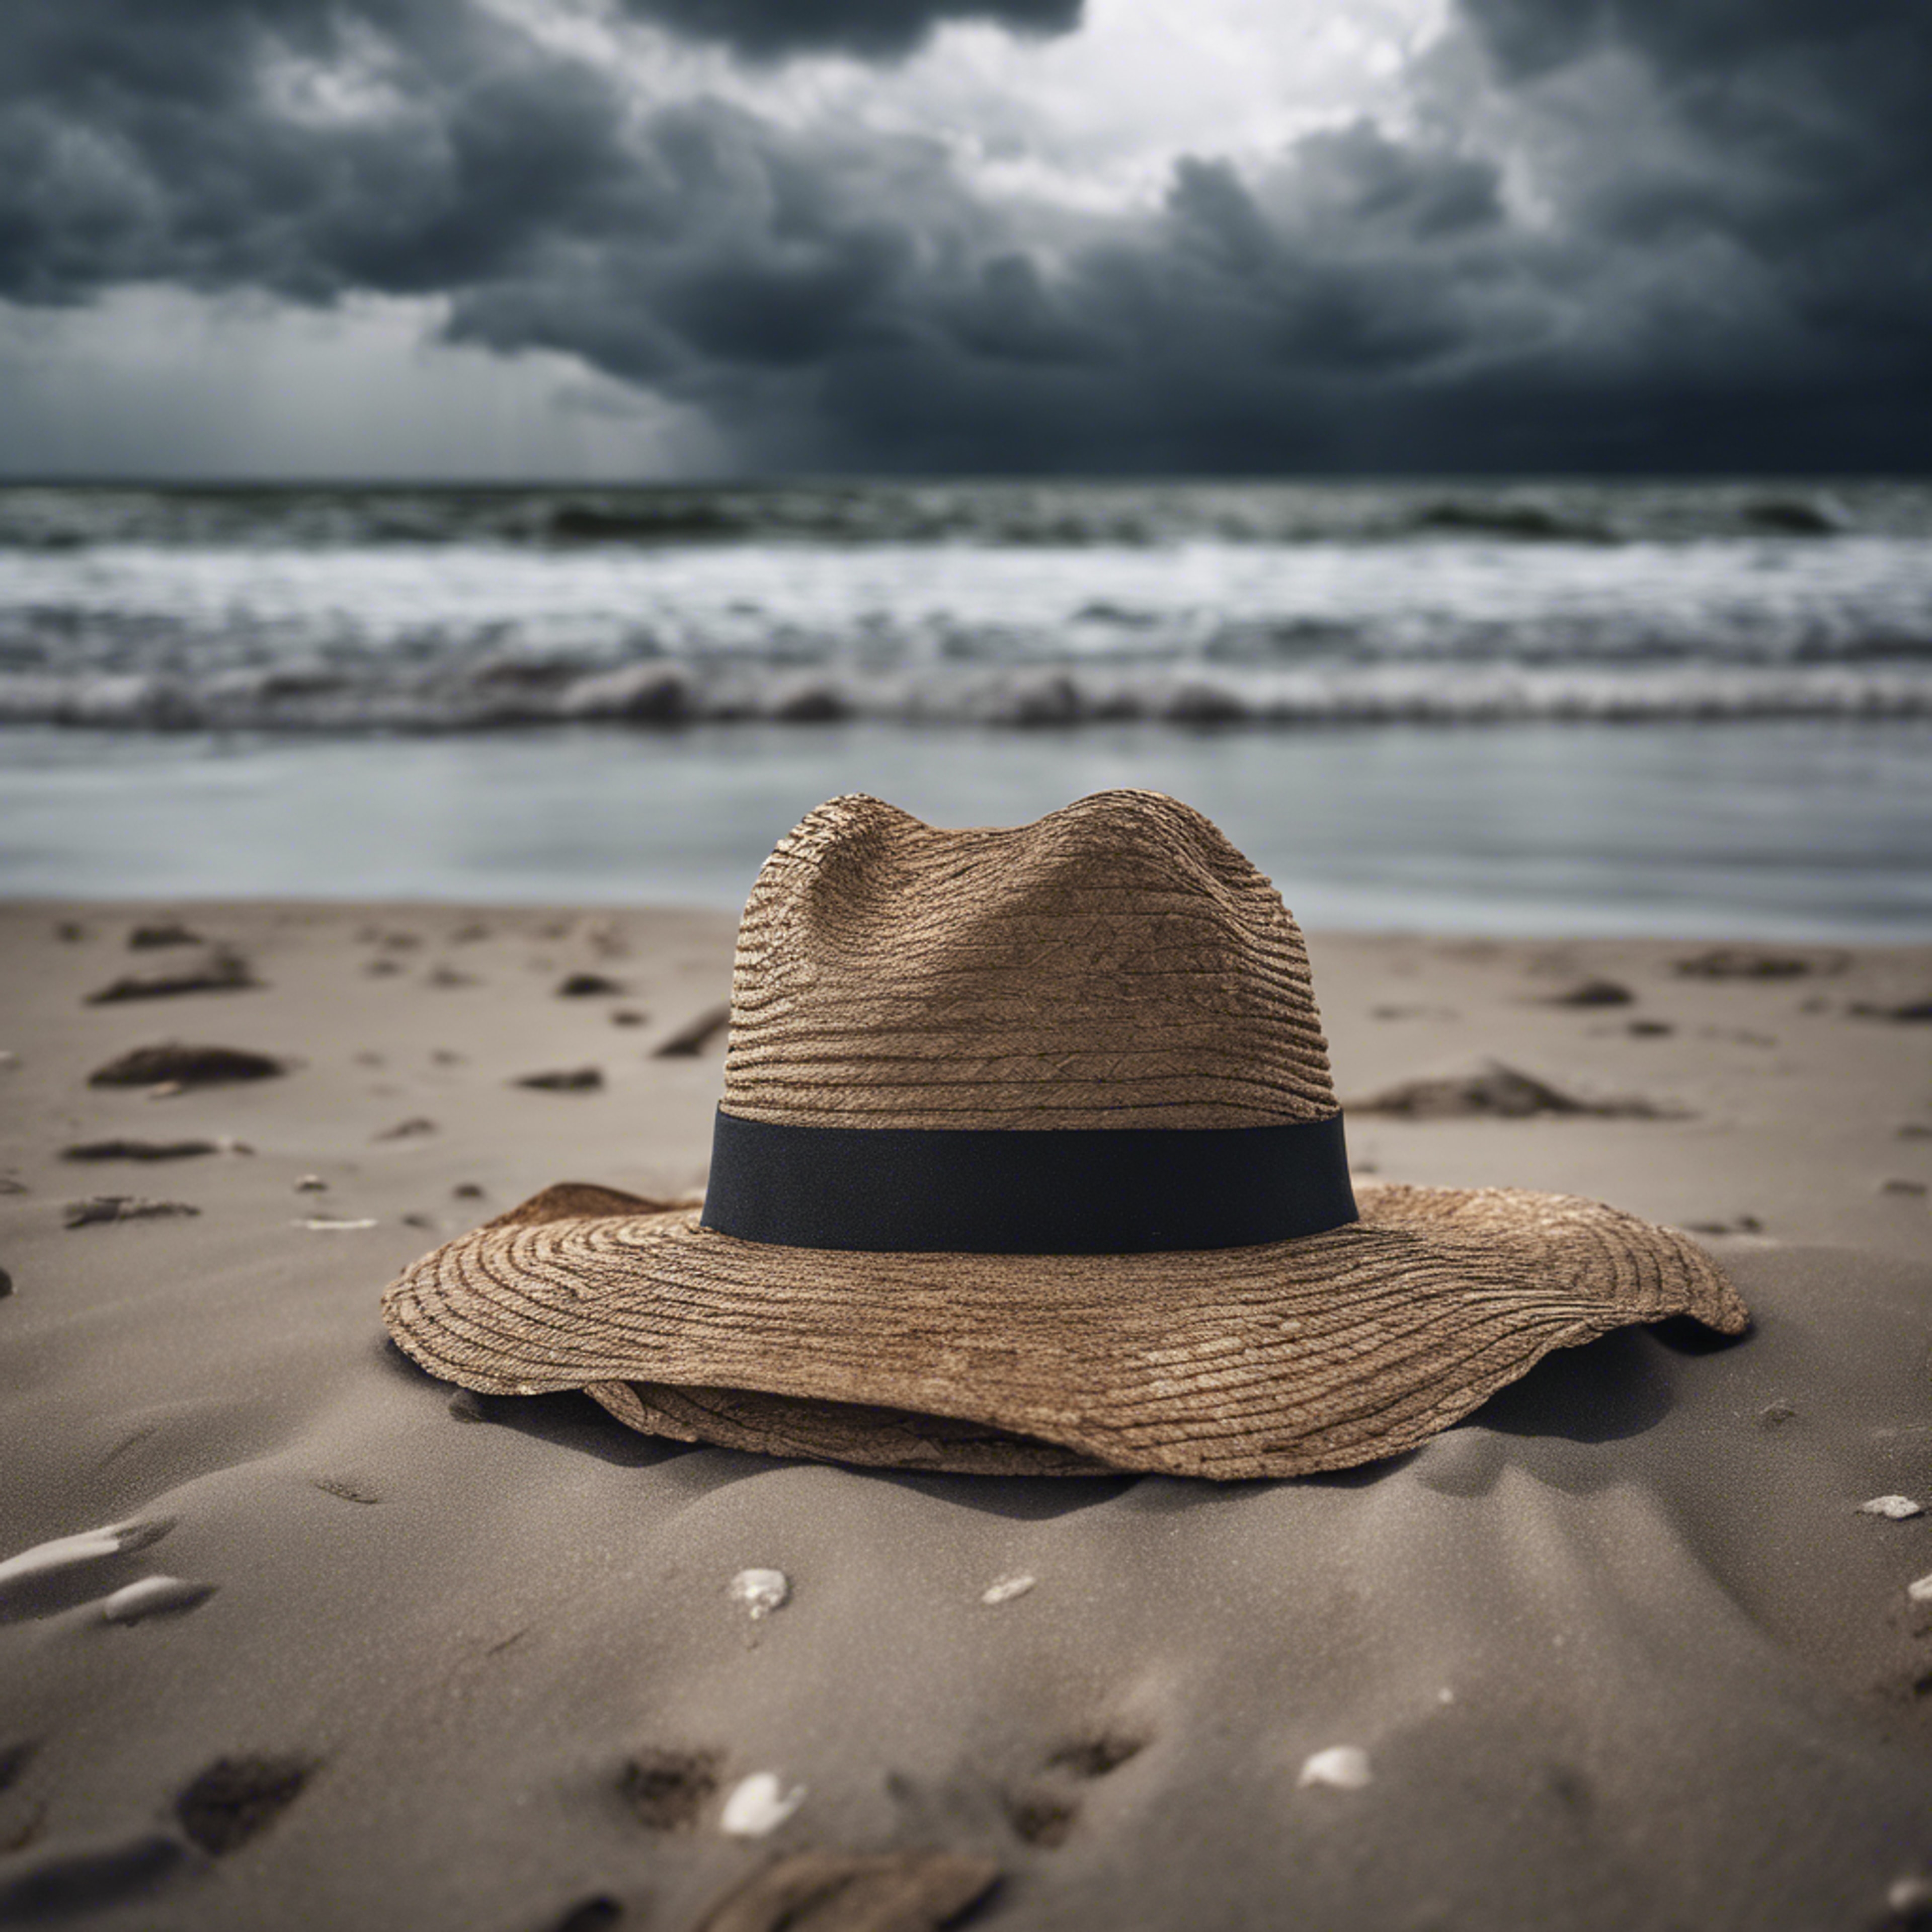 A single, forsaken hat blowing across a desolate beach under a stormy sky. Papel de parede[22c522374a7d402da3d5]